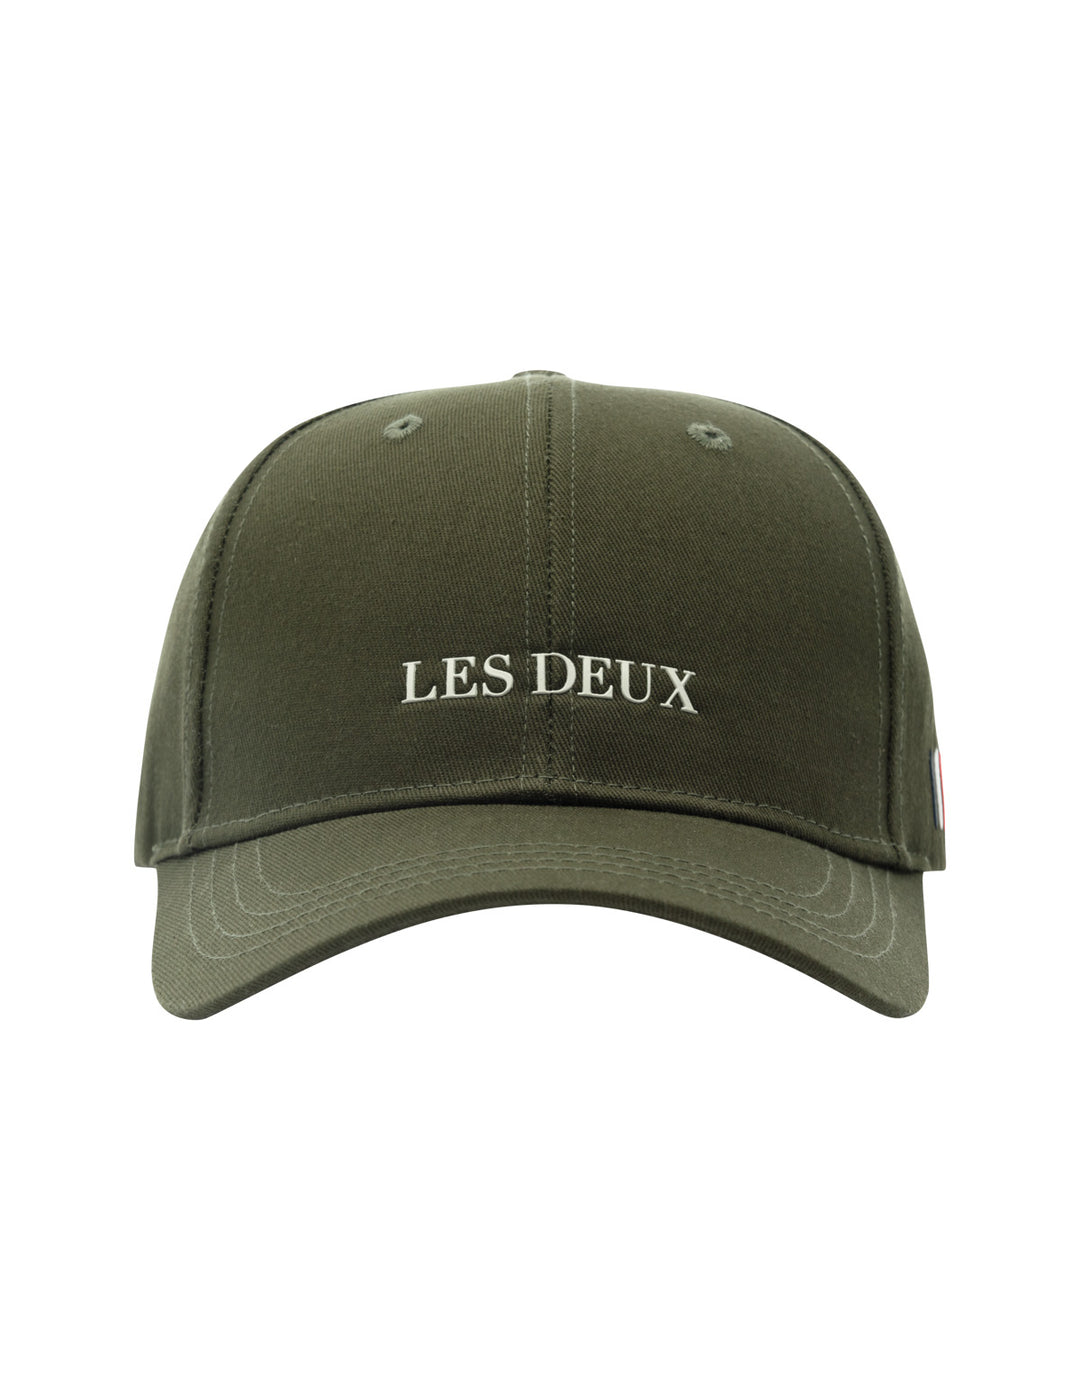 LES DEUX - Lens Baseball Cap - Dale